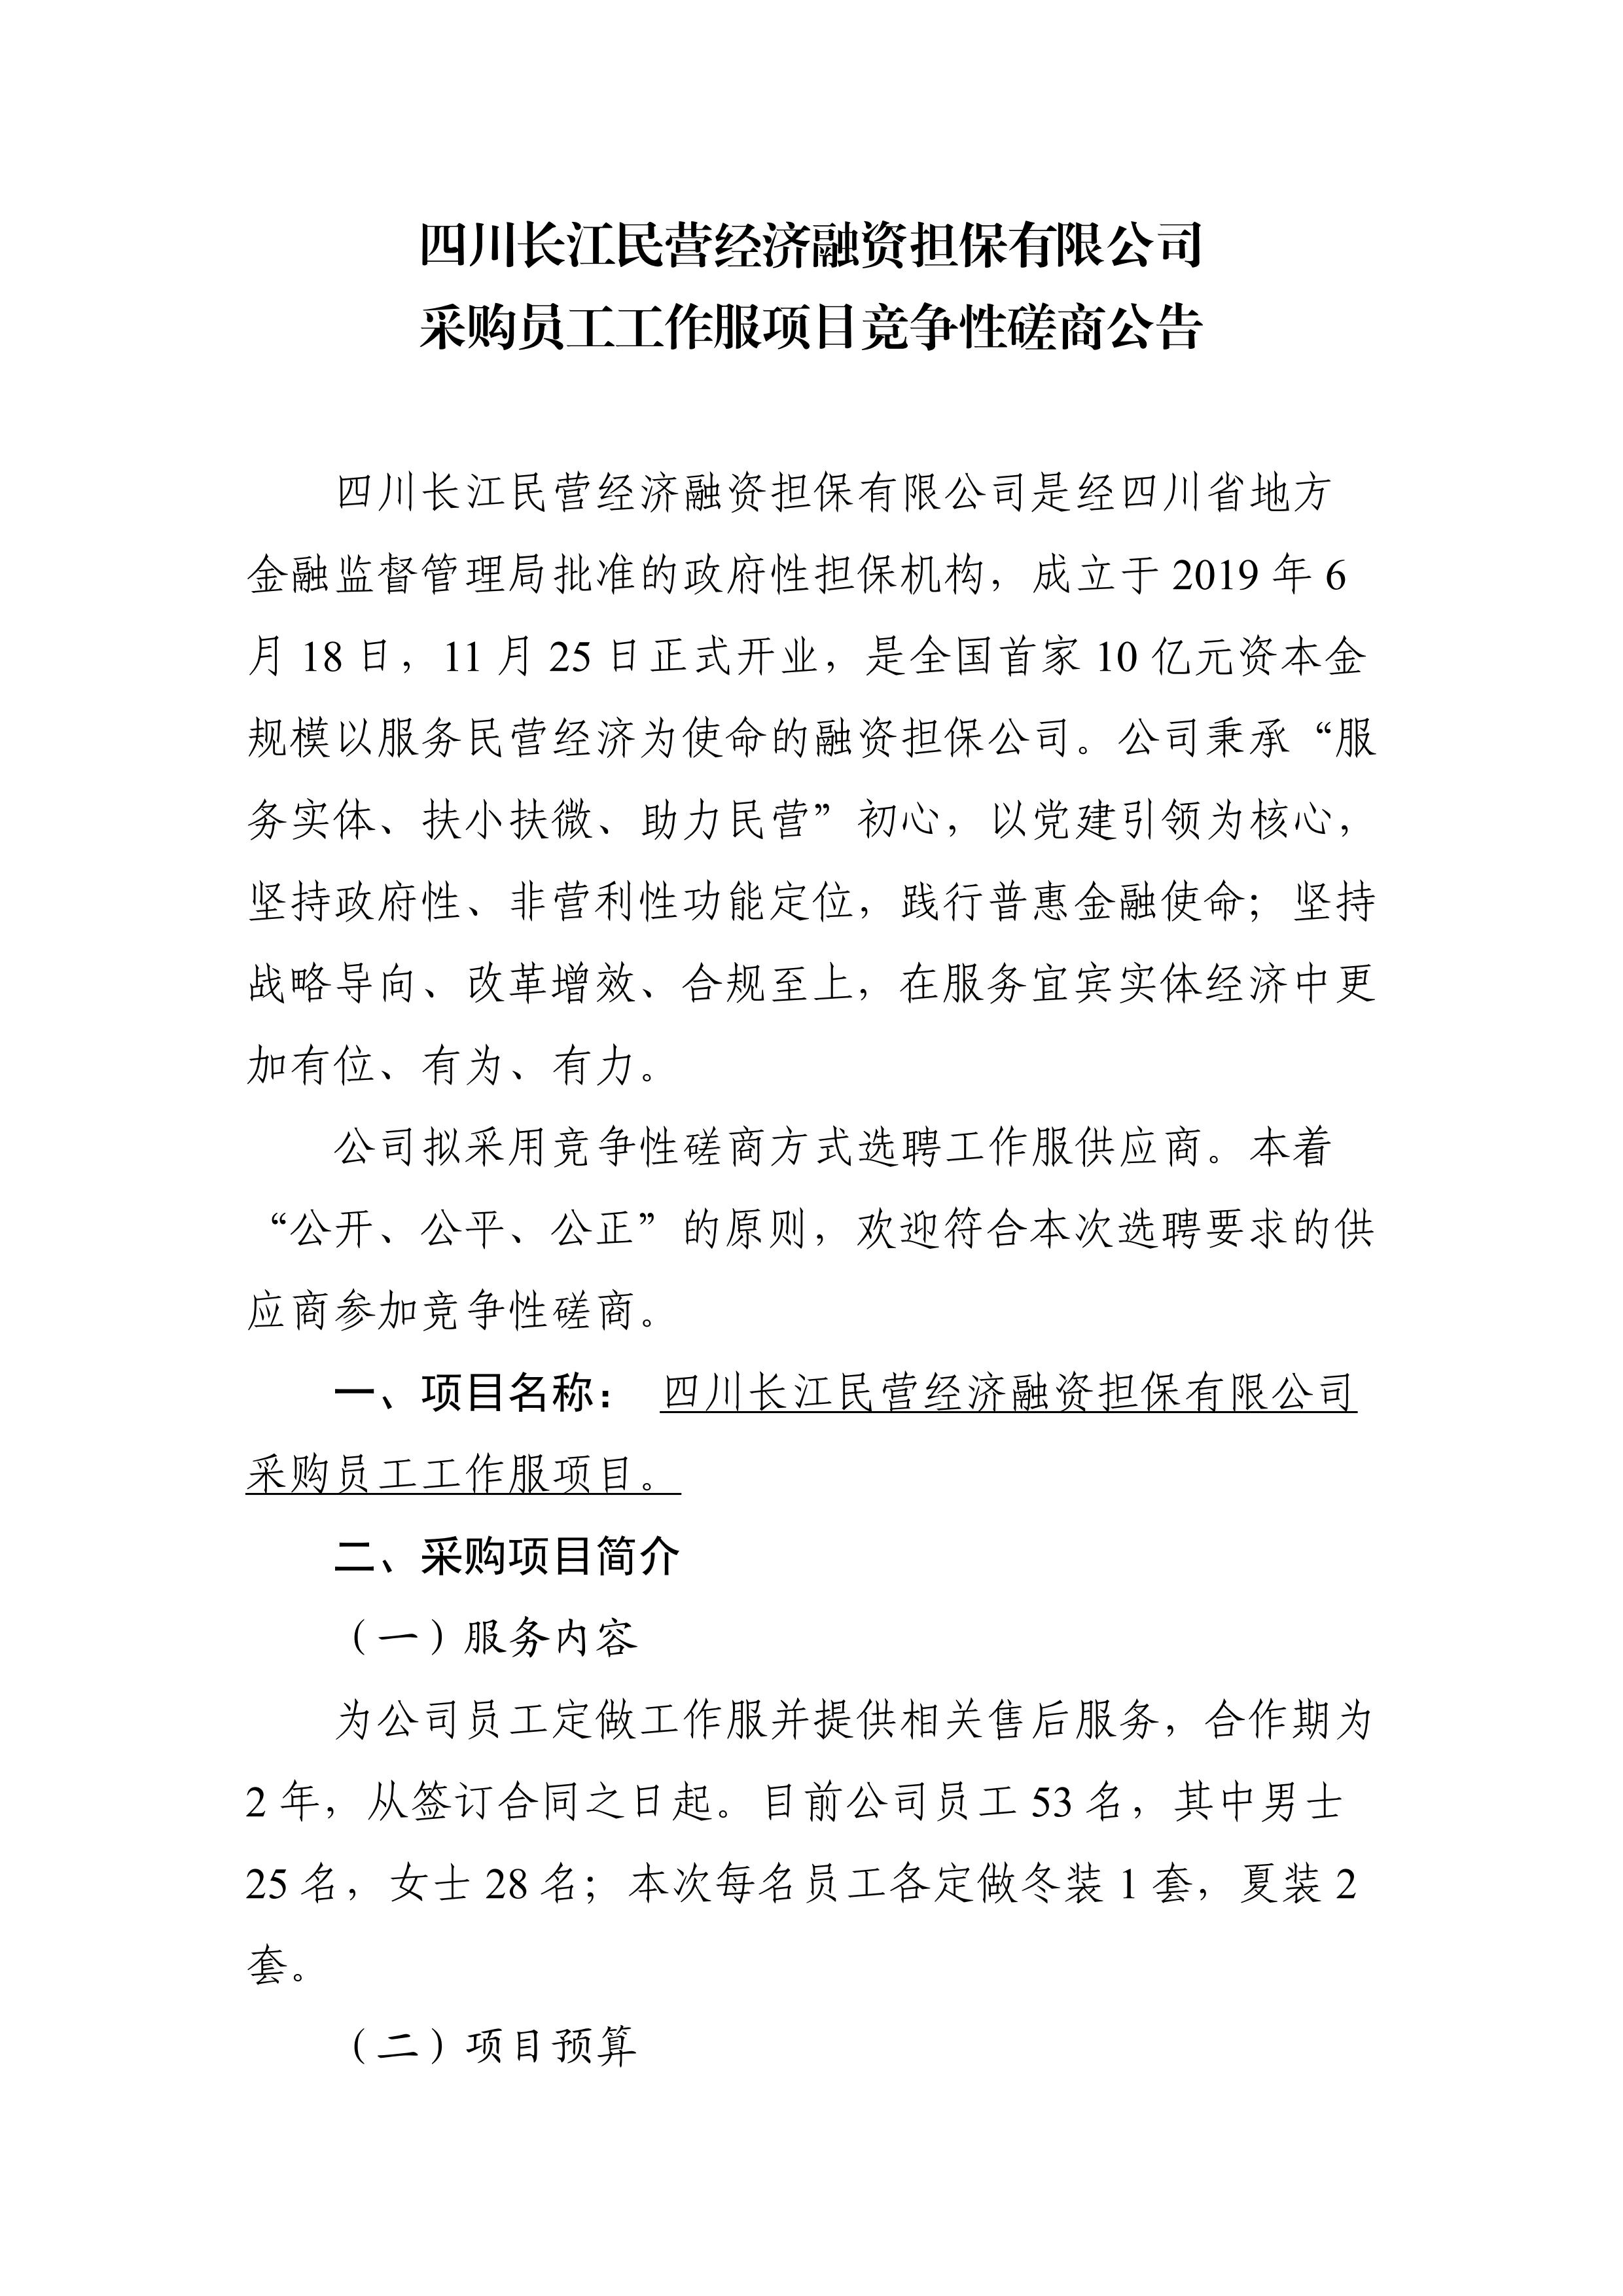 四川长江民营经济融资担保有限公司 采购员工工作服项目竞争性磋商公告